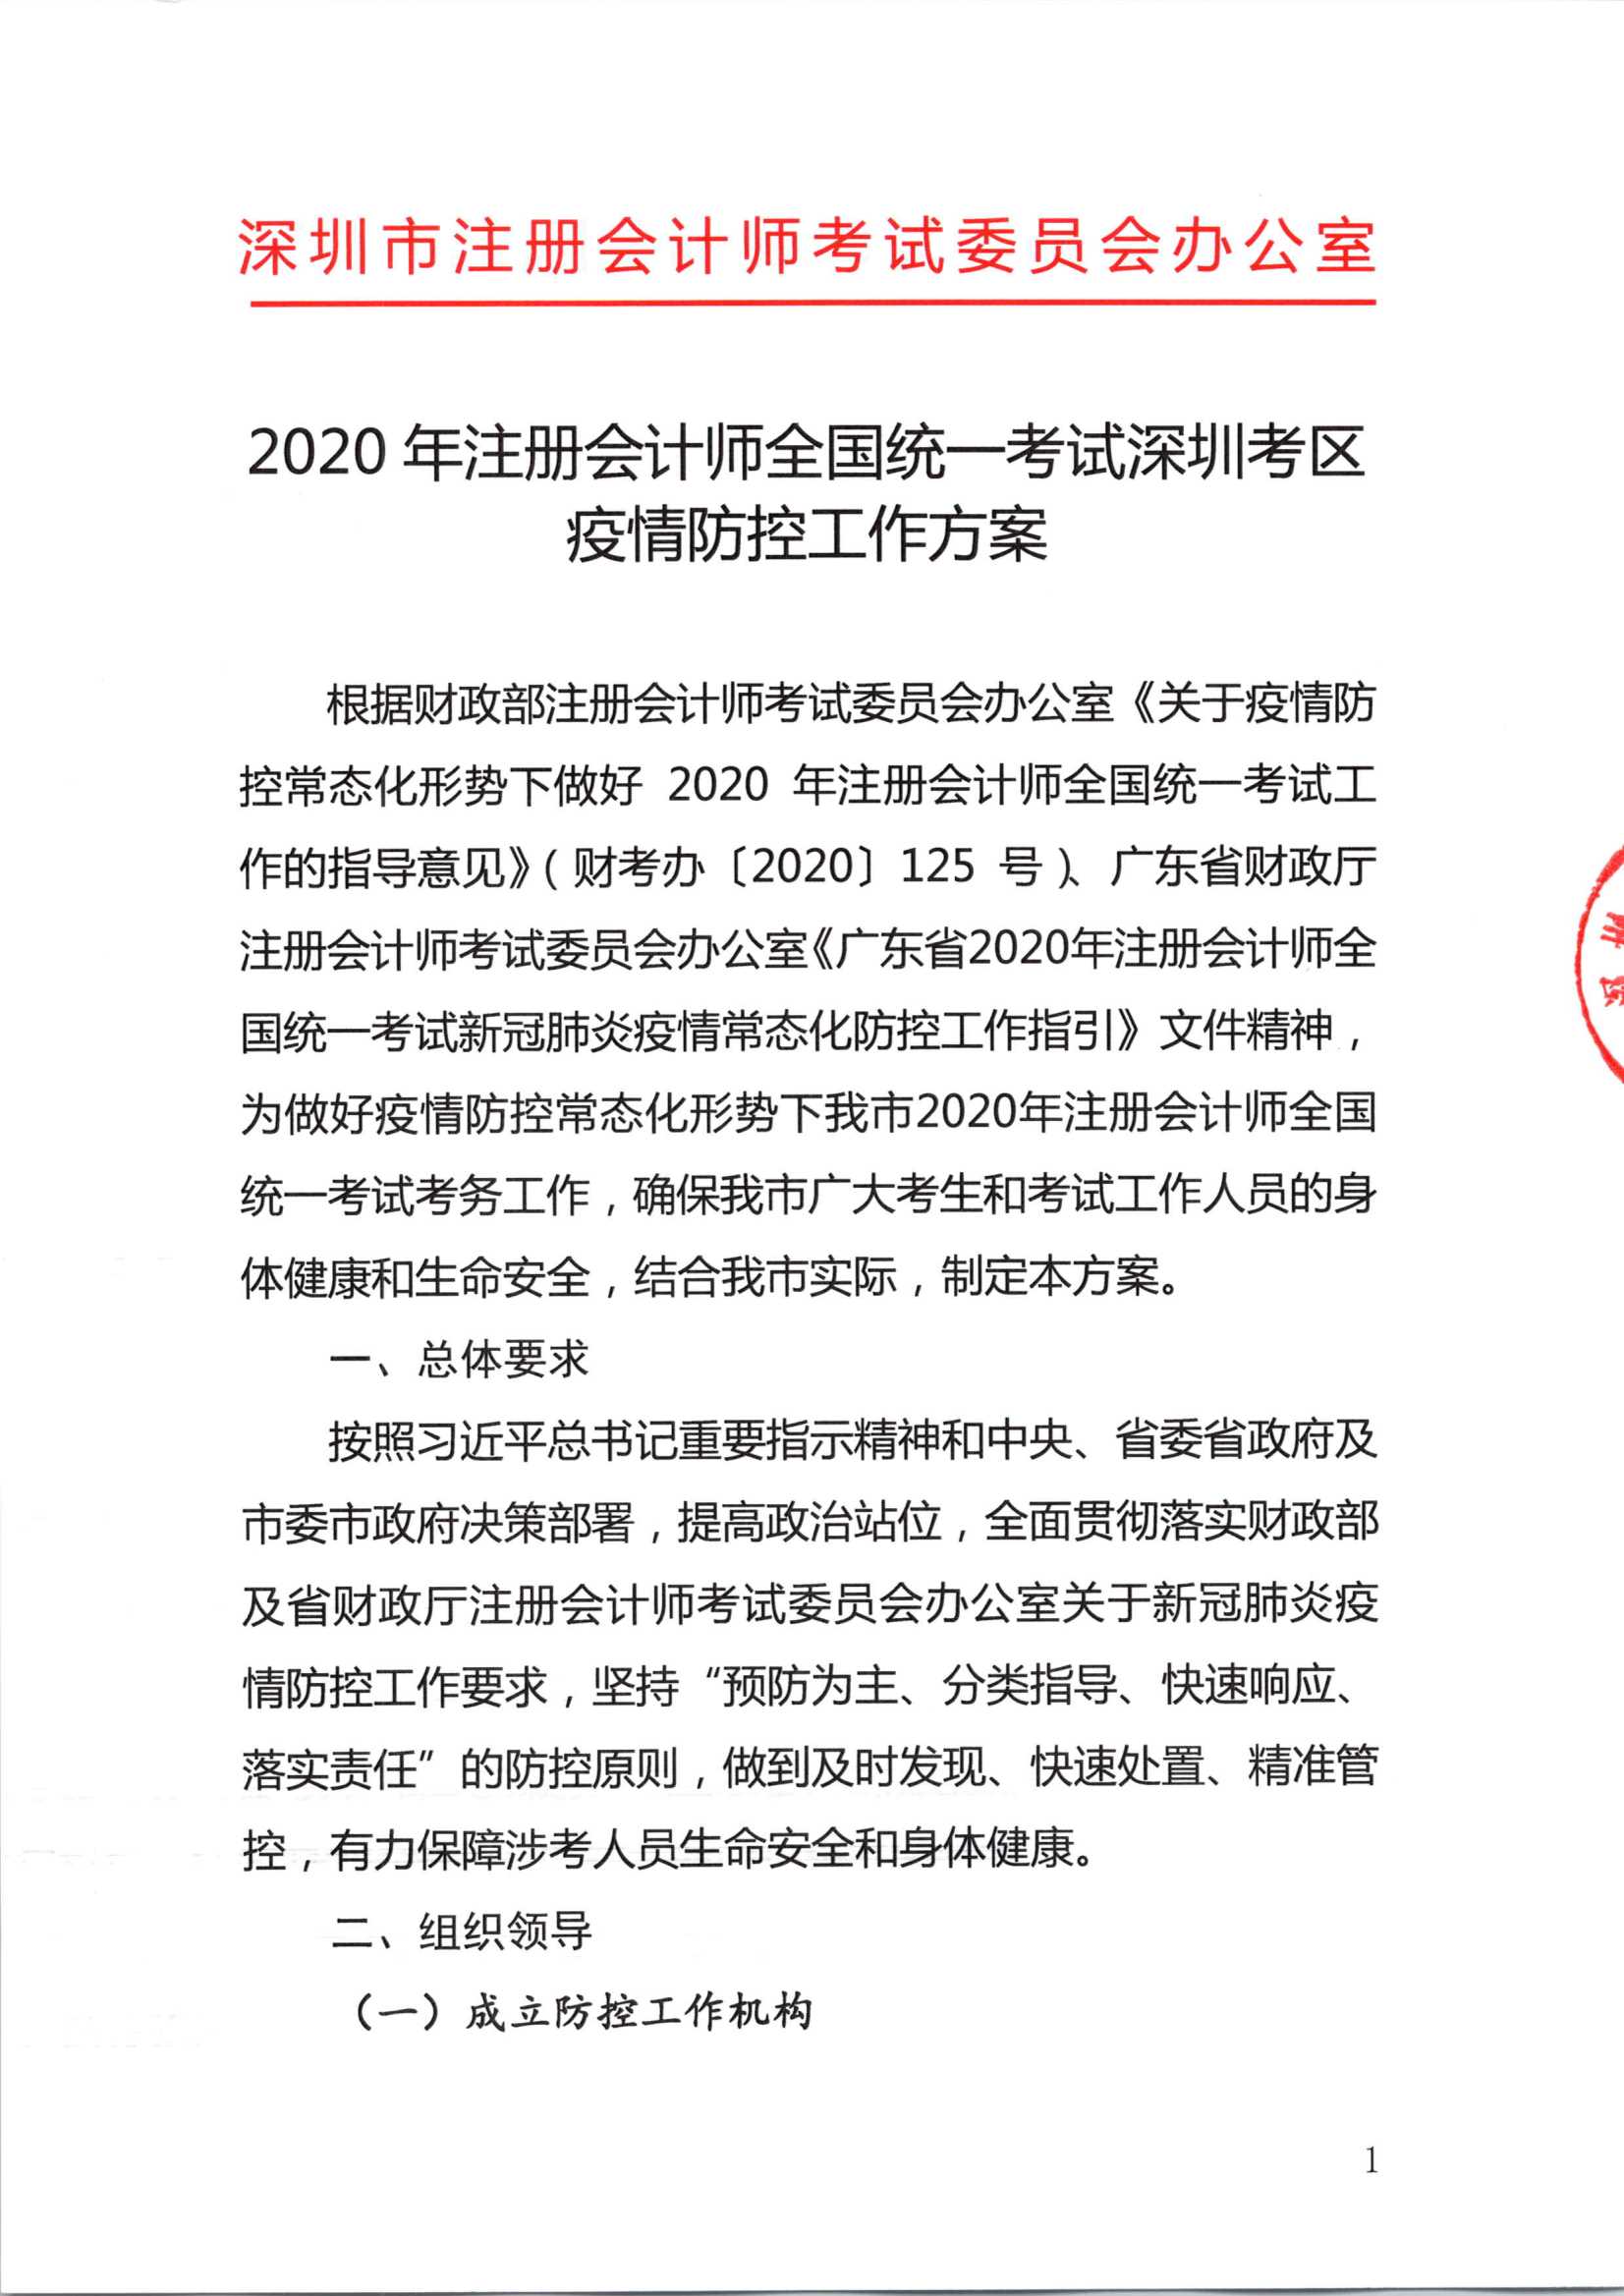 2020注册会计师全国统一考试深圳考区疫情防控工作方案_1.Png